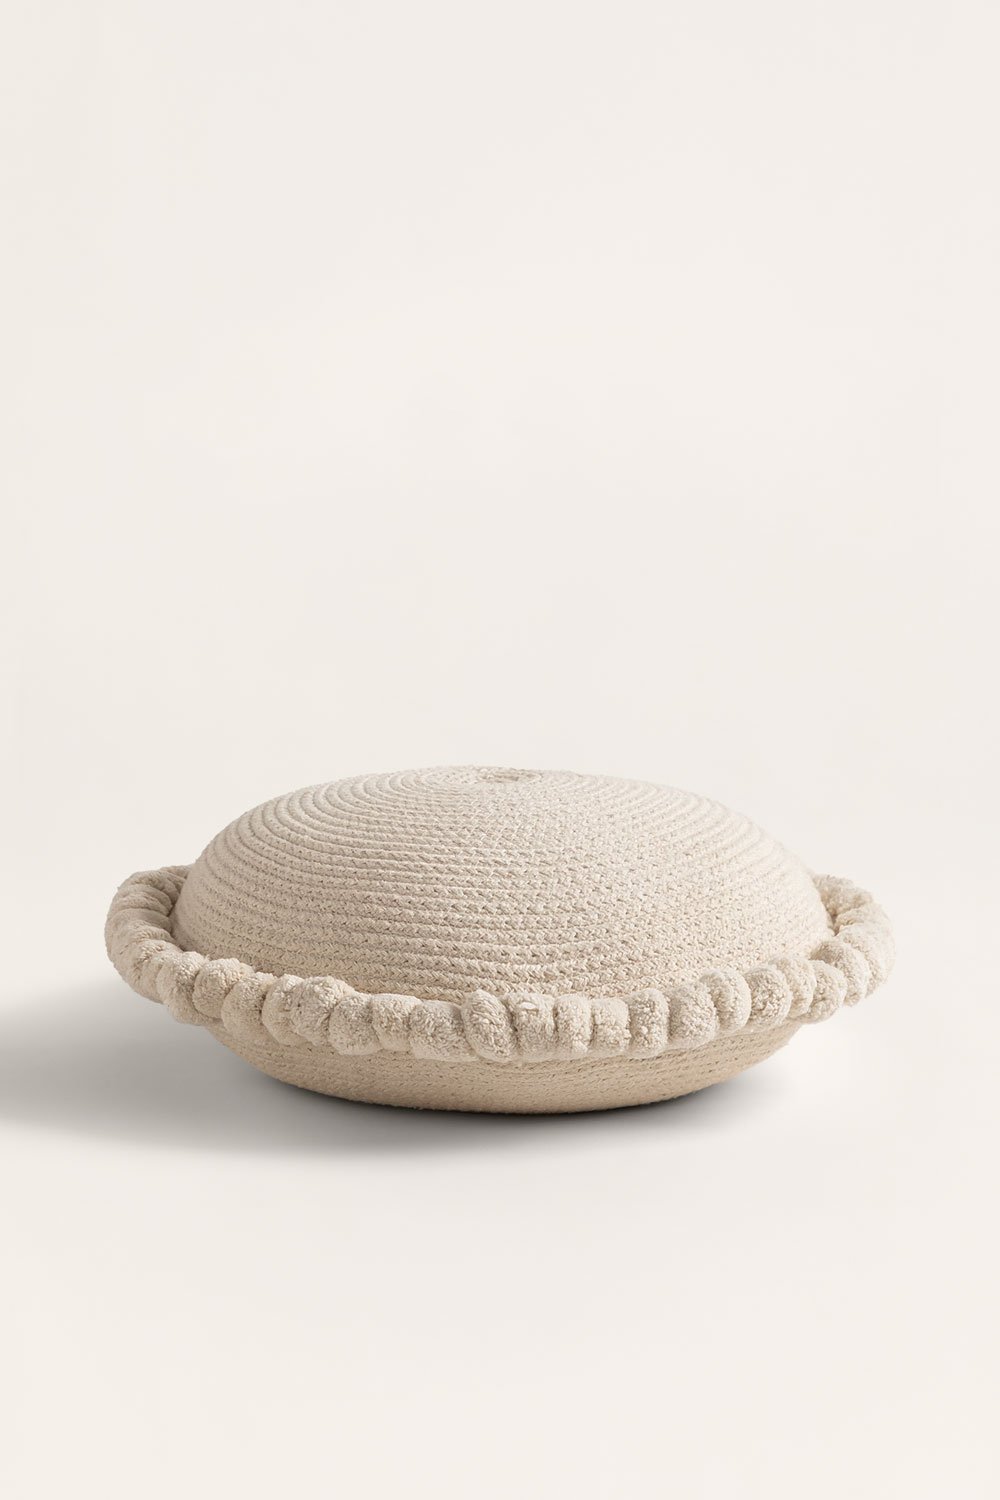 Almofada redonda de algodão trançado Olets, imagem de galeria 2